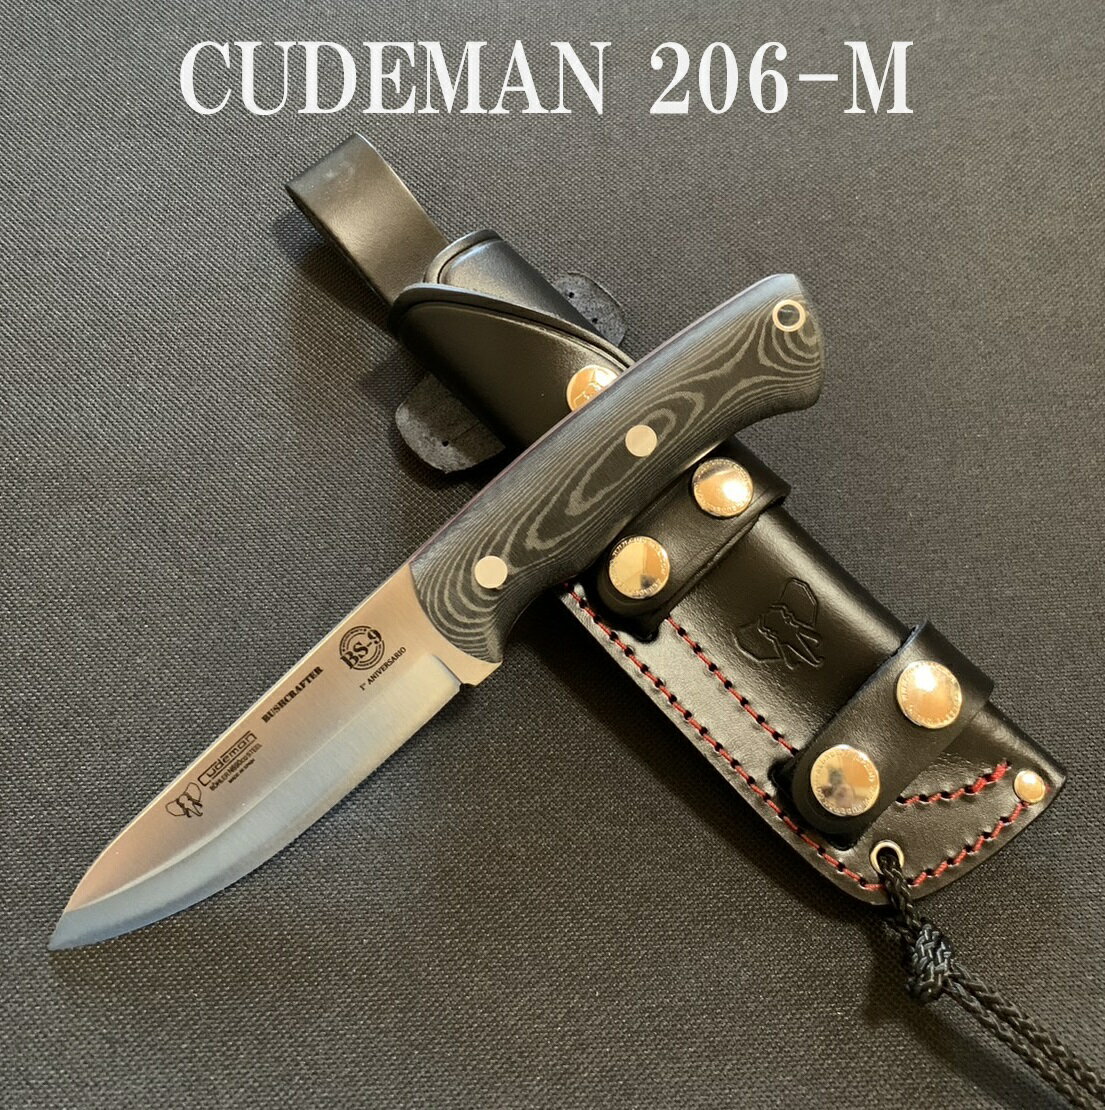 【あす楽対応】Cudeman クードマン 206-M Outdoor Knife マイカルタ キャンプ アウトドア ナイフ 送料無料